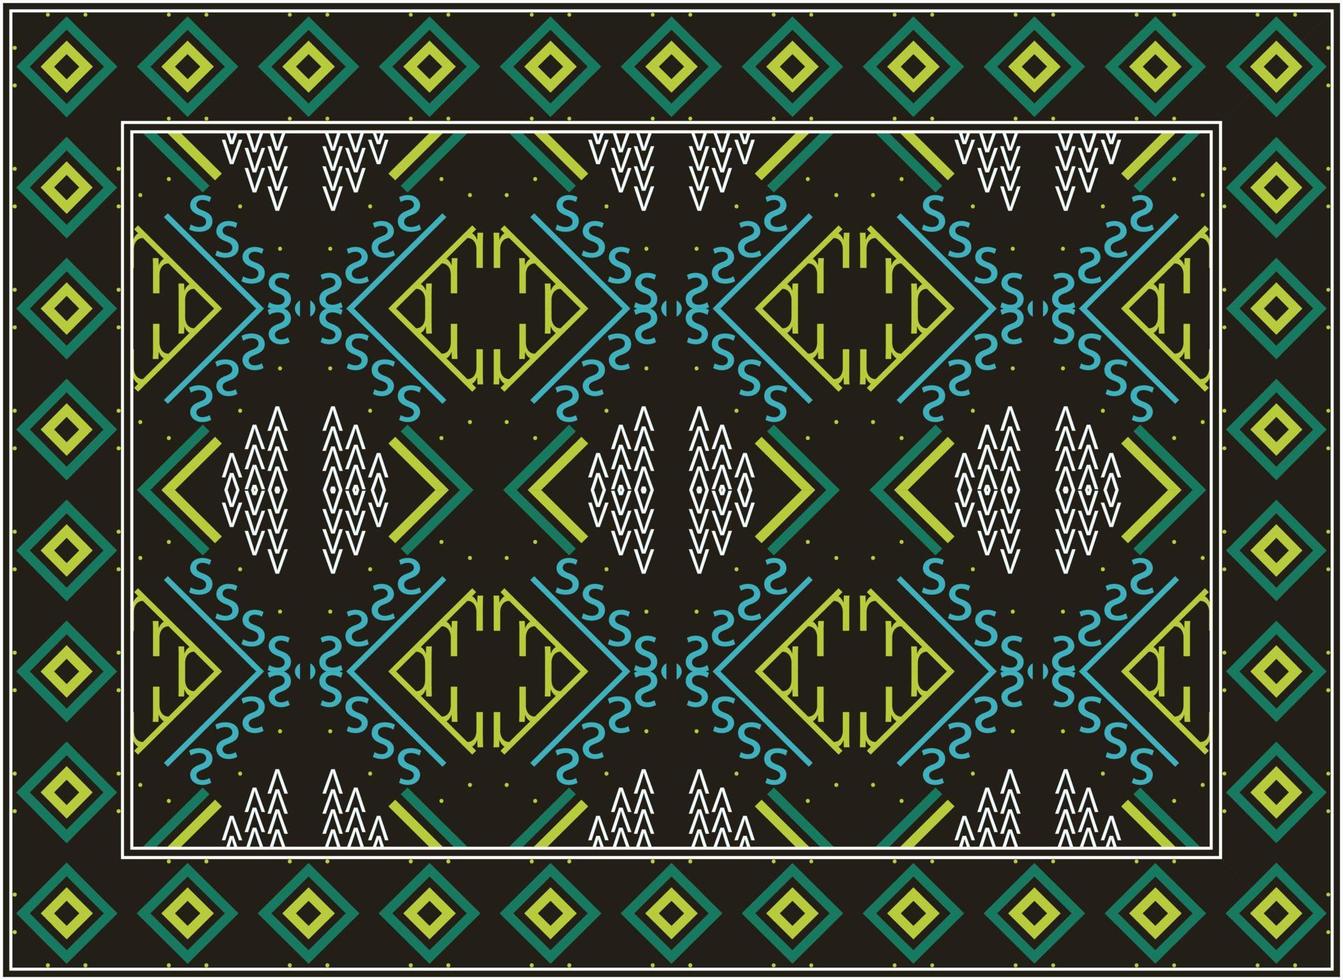 persisk matta mönster, afrikansk motiv scandinavian persisk matta modern afrikansk etnisk aztec stil design för skriva ut tyg mattor, handdukar, näsdukar, halsdukar matta, vektor